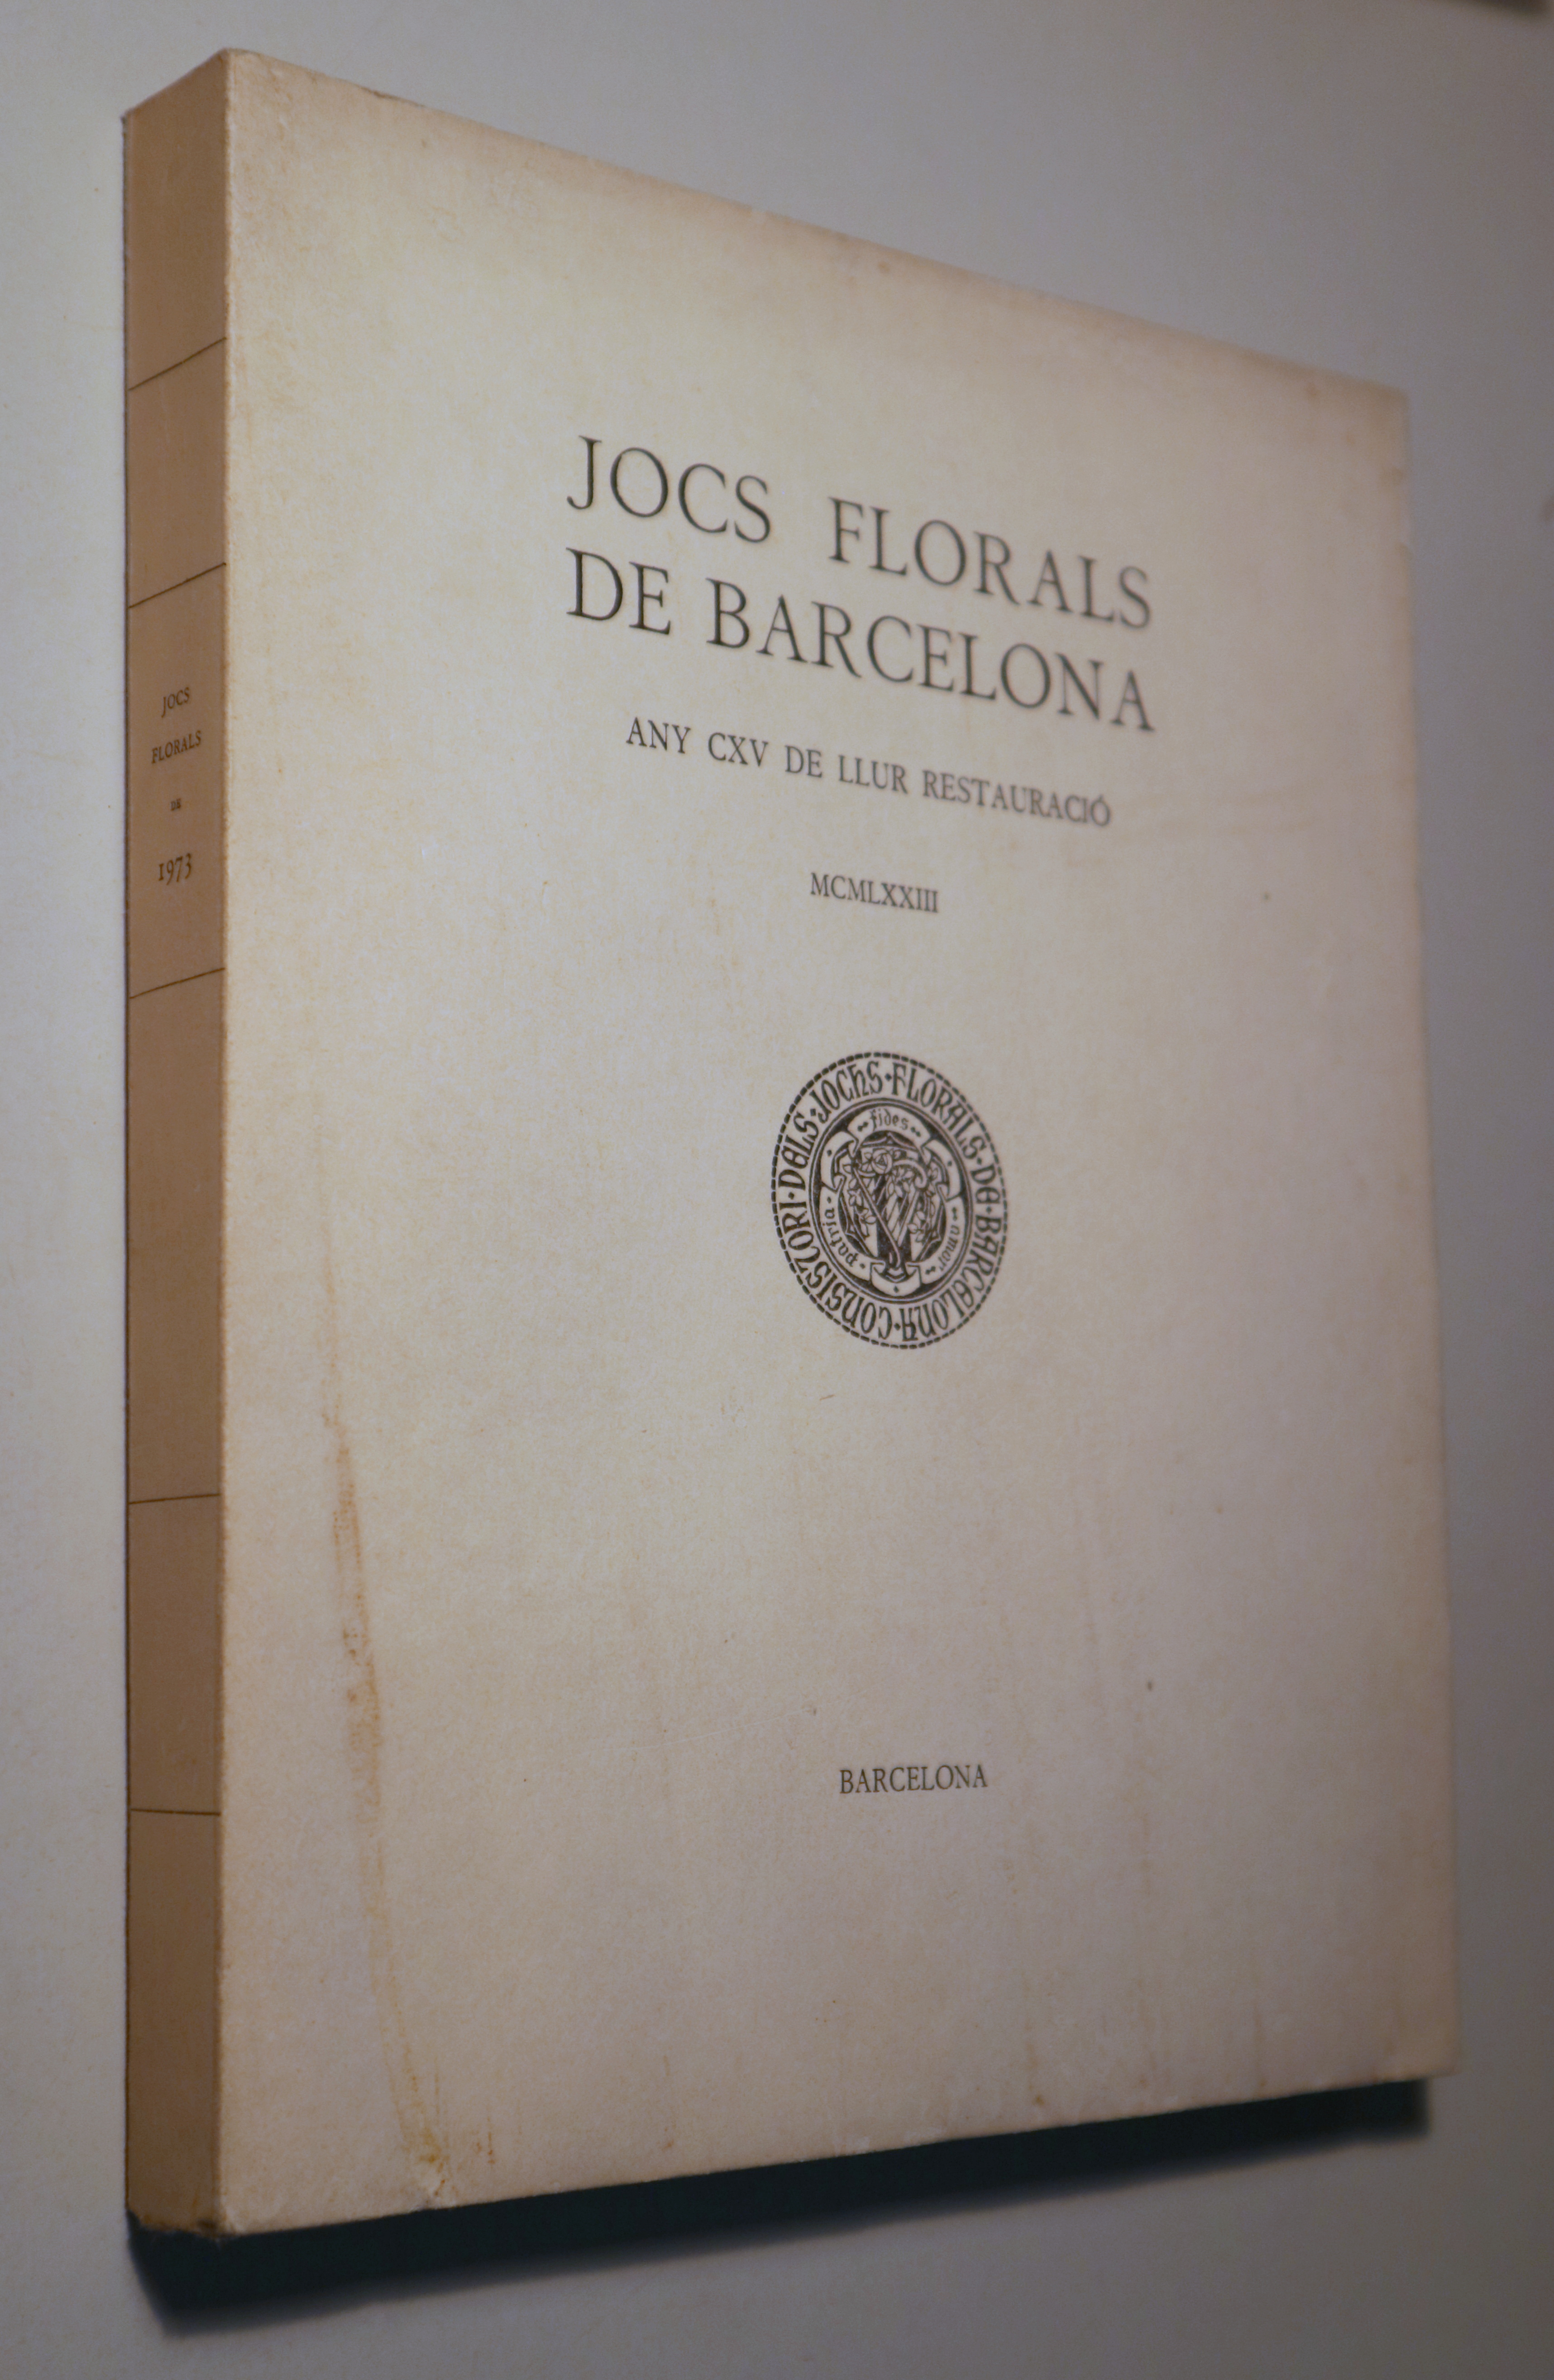 JOCS FLORALS DE BARCELONA MXMLXXII - Barcelona 1974